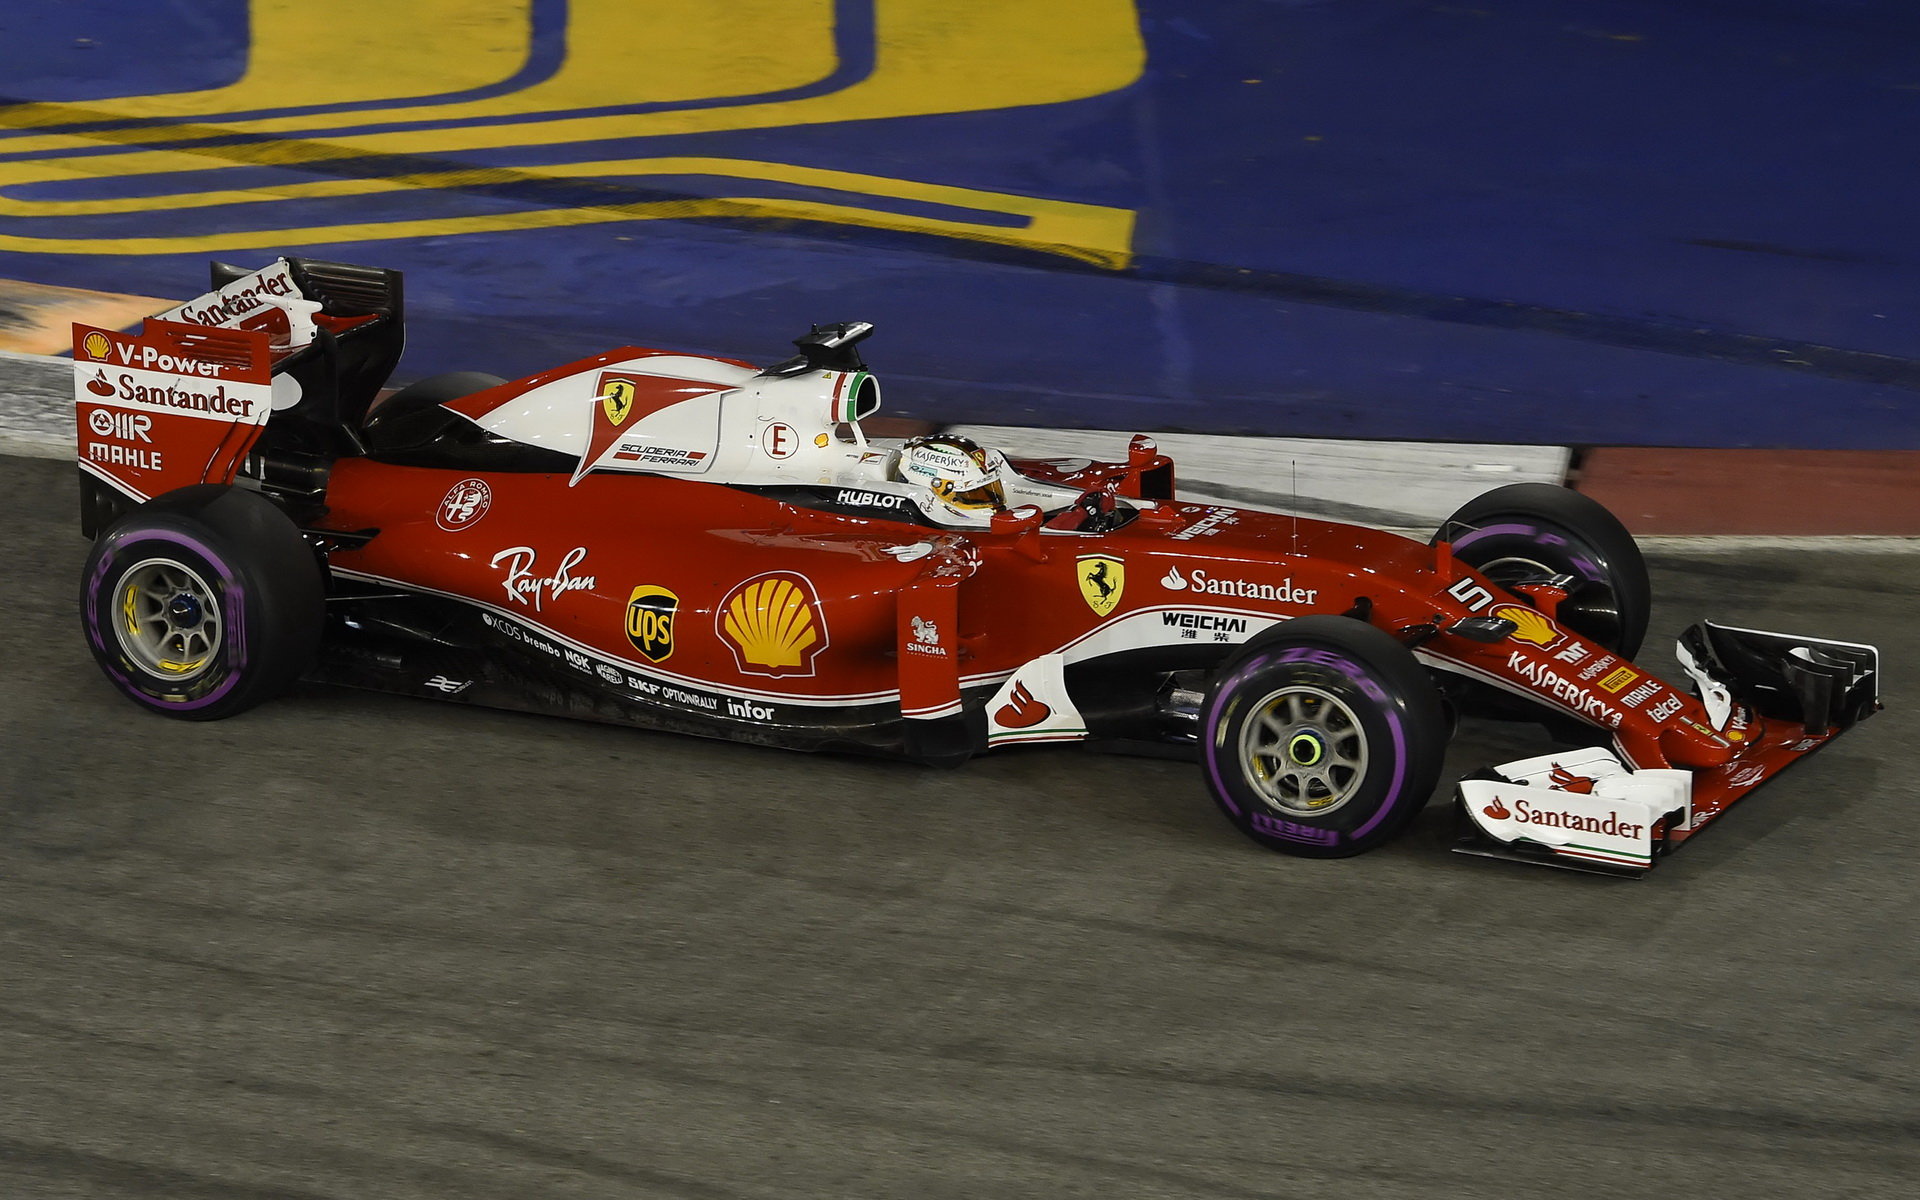 Sebastian Vettel v kvalifikaci v Singapuru